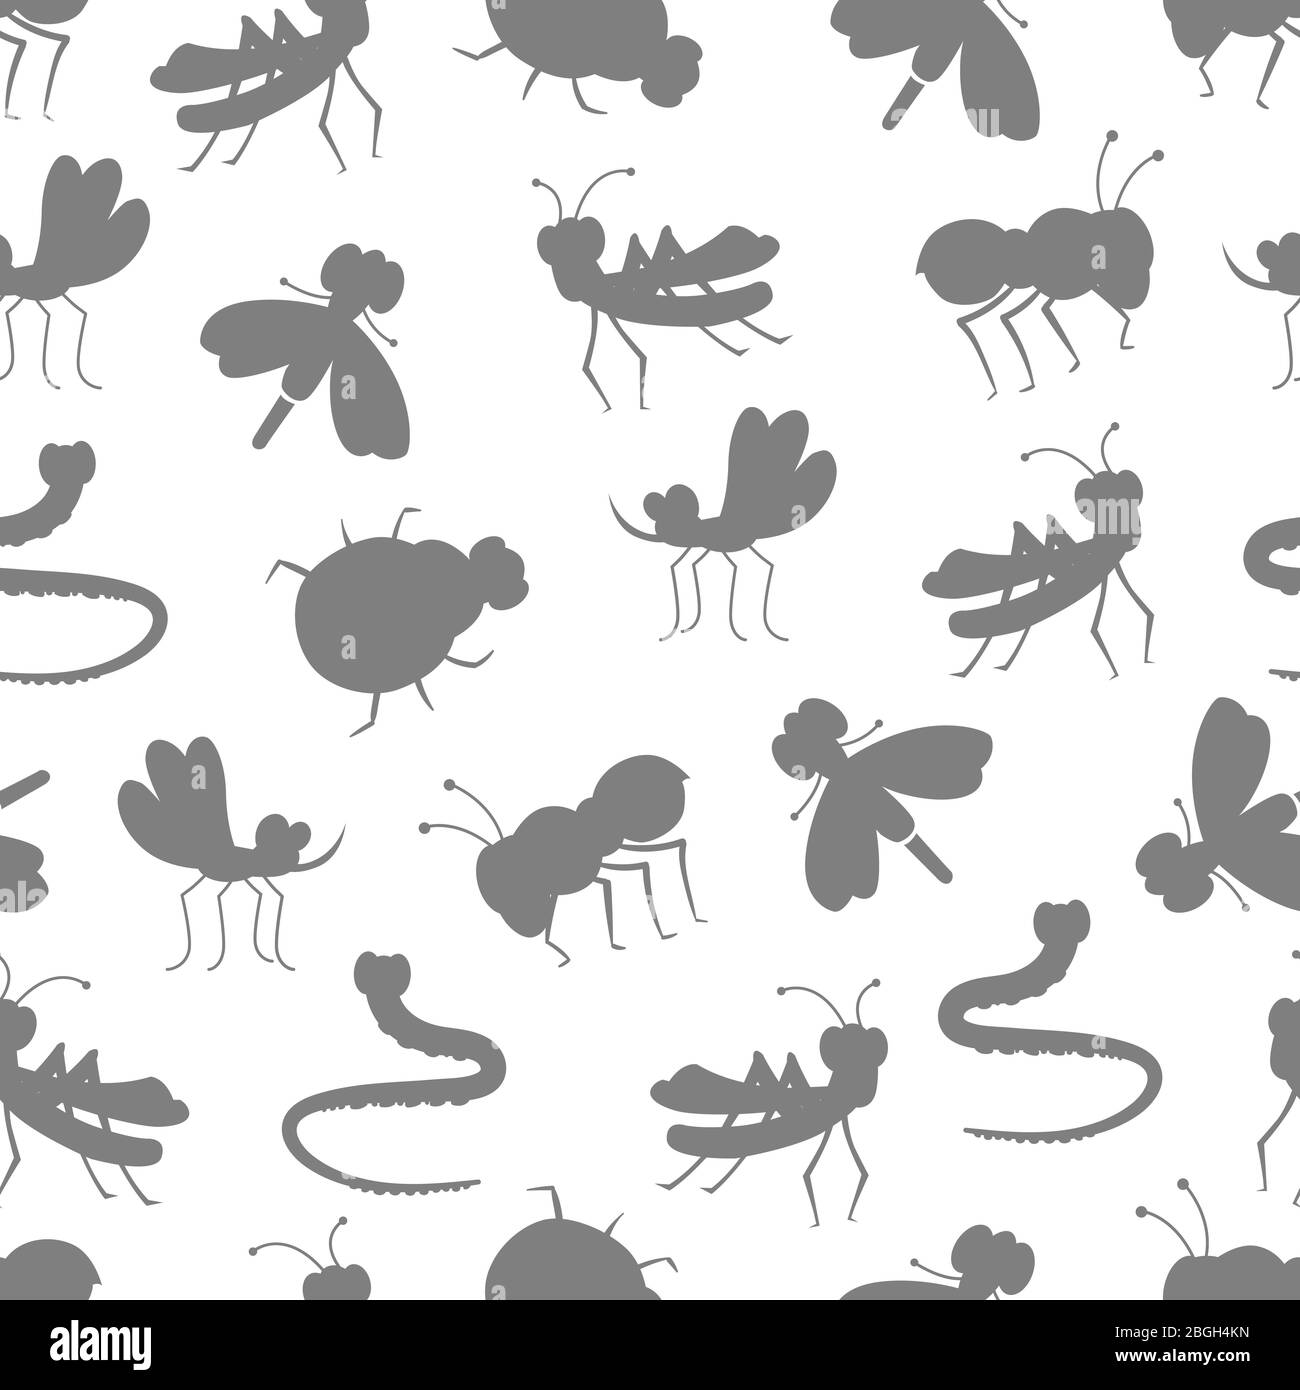 Insekt graue Silhouetten auf weißem nahtlosen Hintergrund Muster Design. Vektorgrafik Stock Vektor